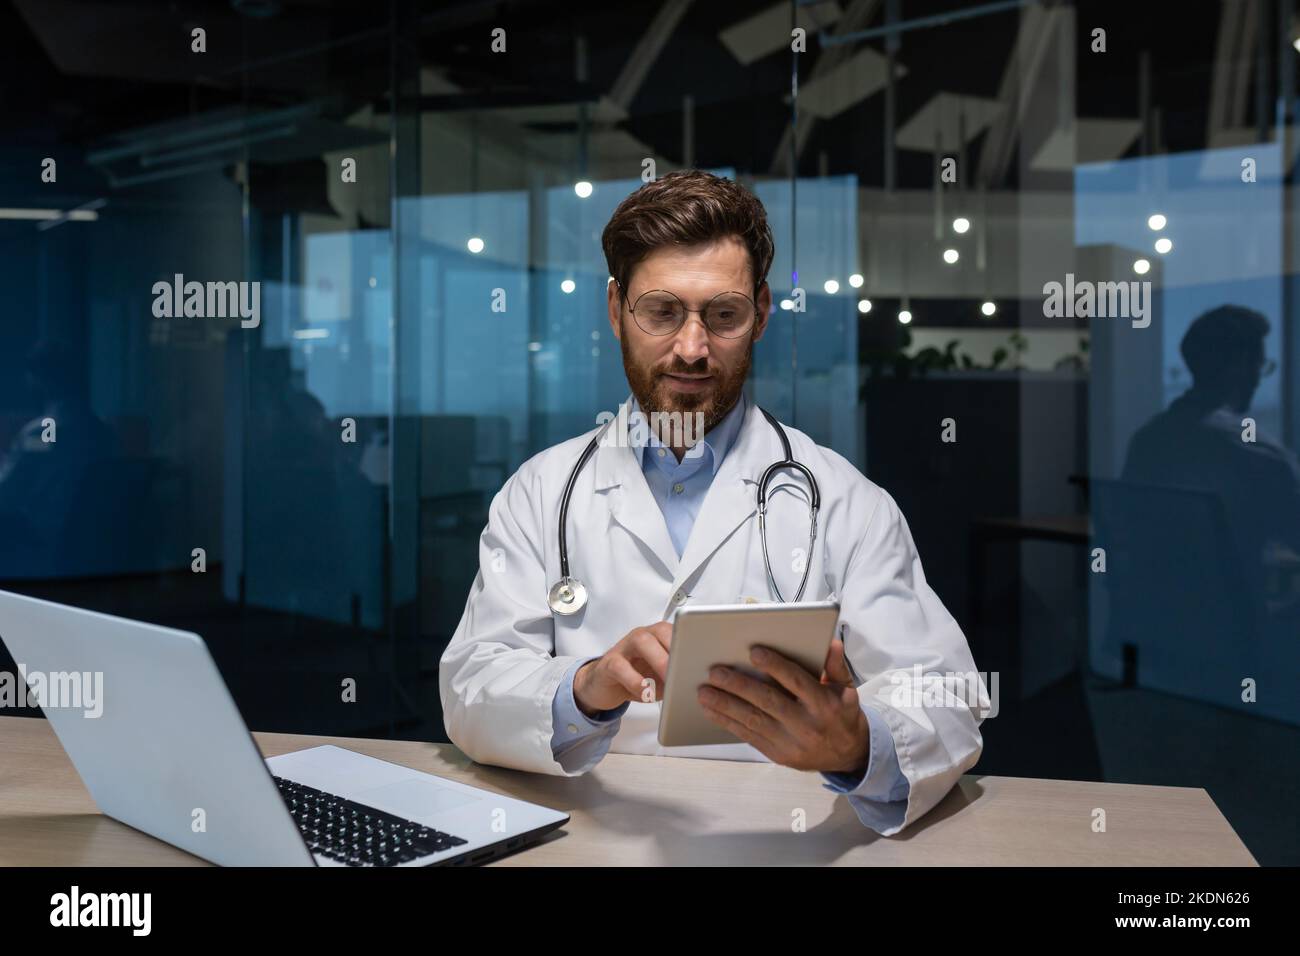 un médecin mature dans une robe médicale travaille à l'intérieur du bureau de la clinique, le médecin tient une tablette dans ses mains pour la consultation en ligne des patients, travaillant avec un ordinateur portable. Banque D'Images